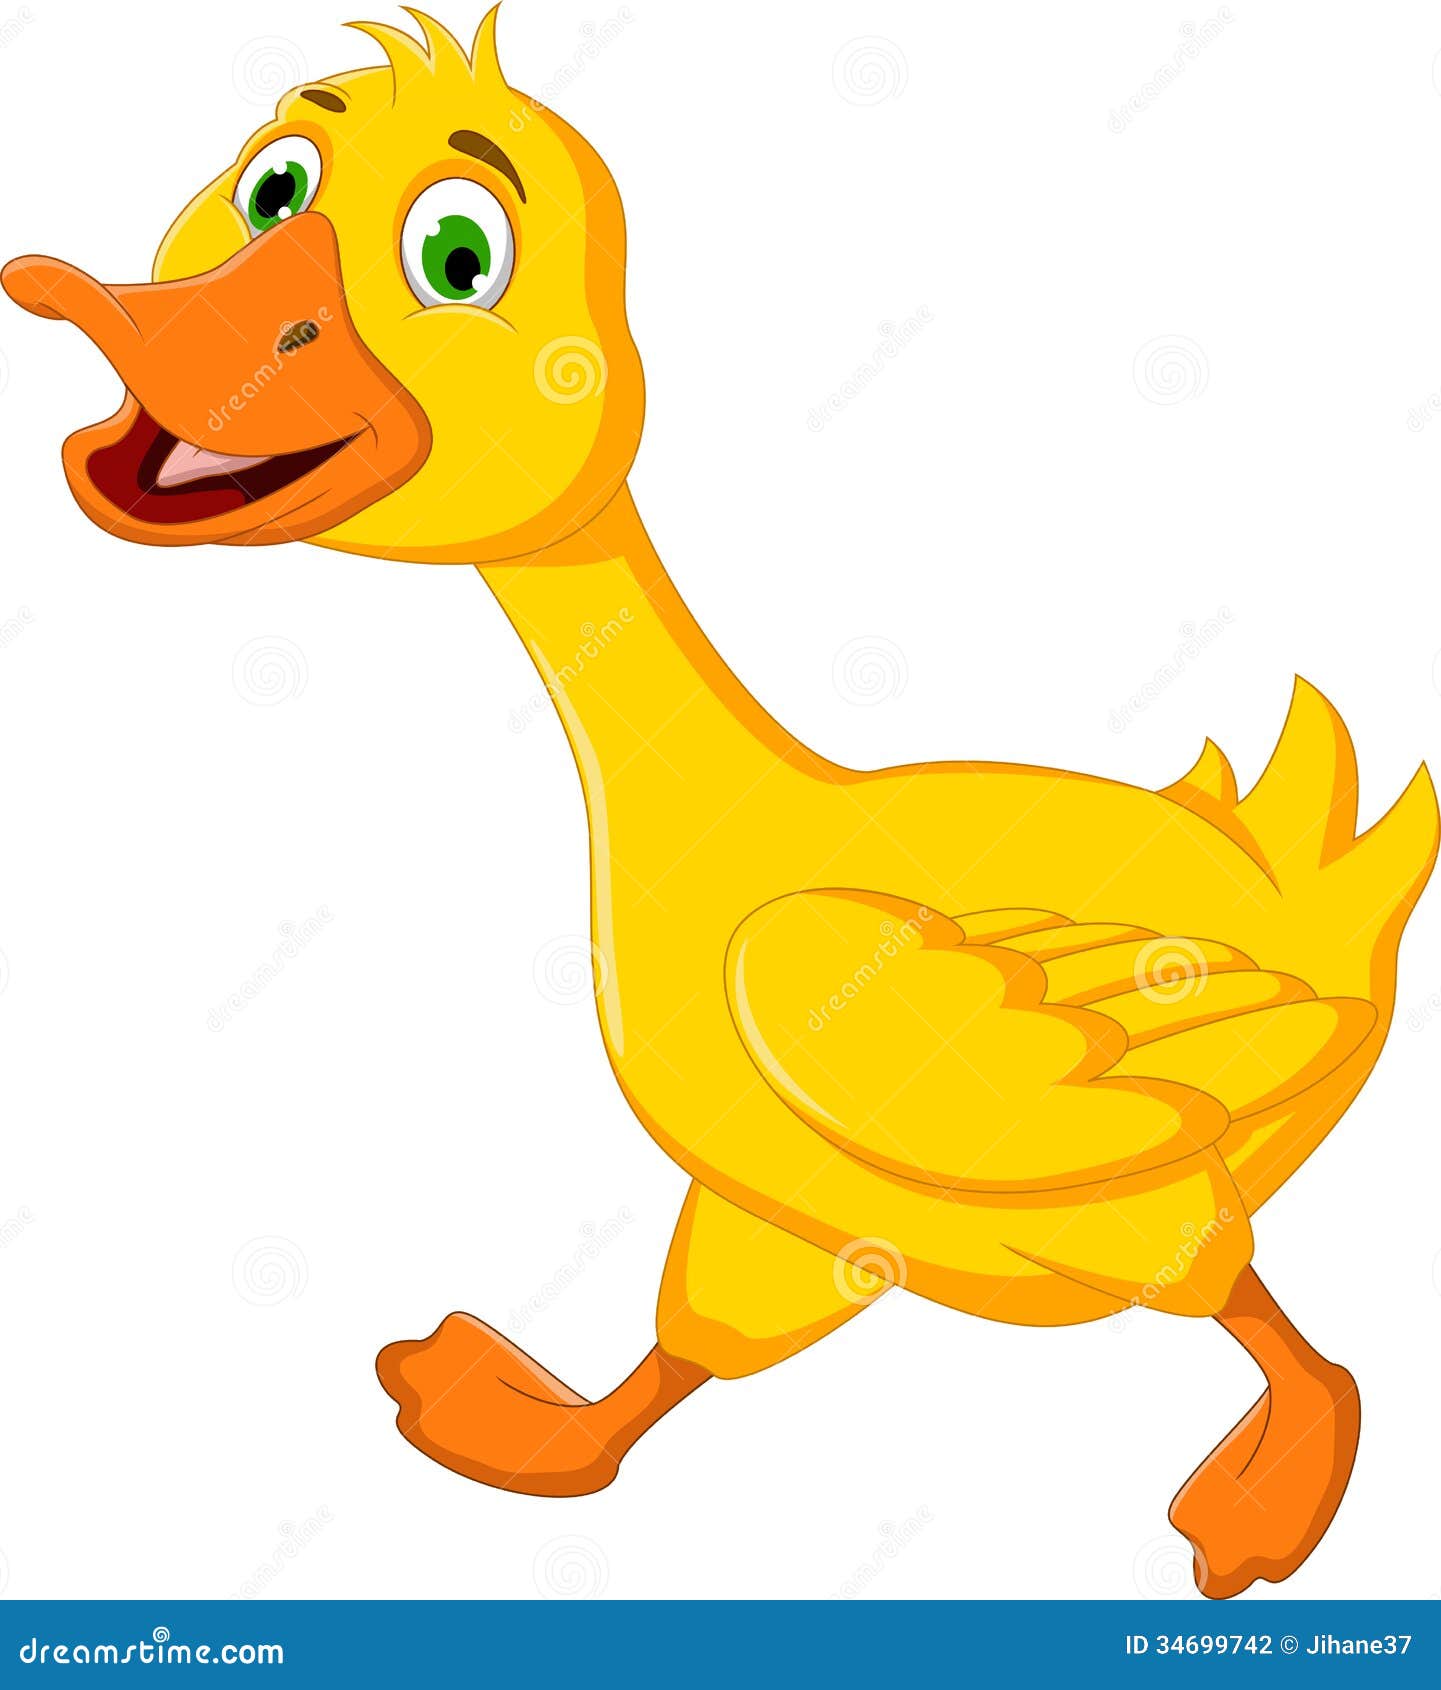 funny duck clip art - photo #11